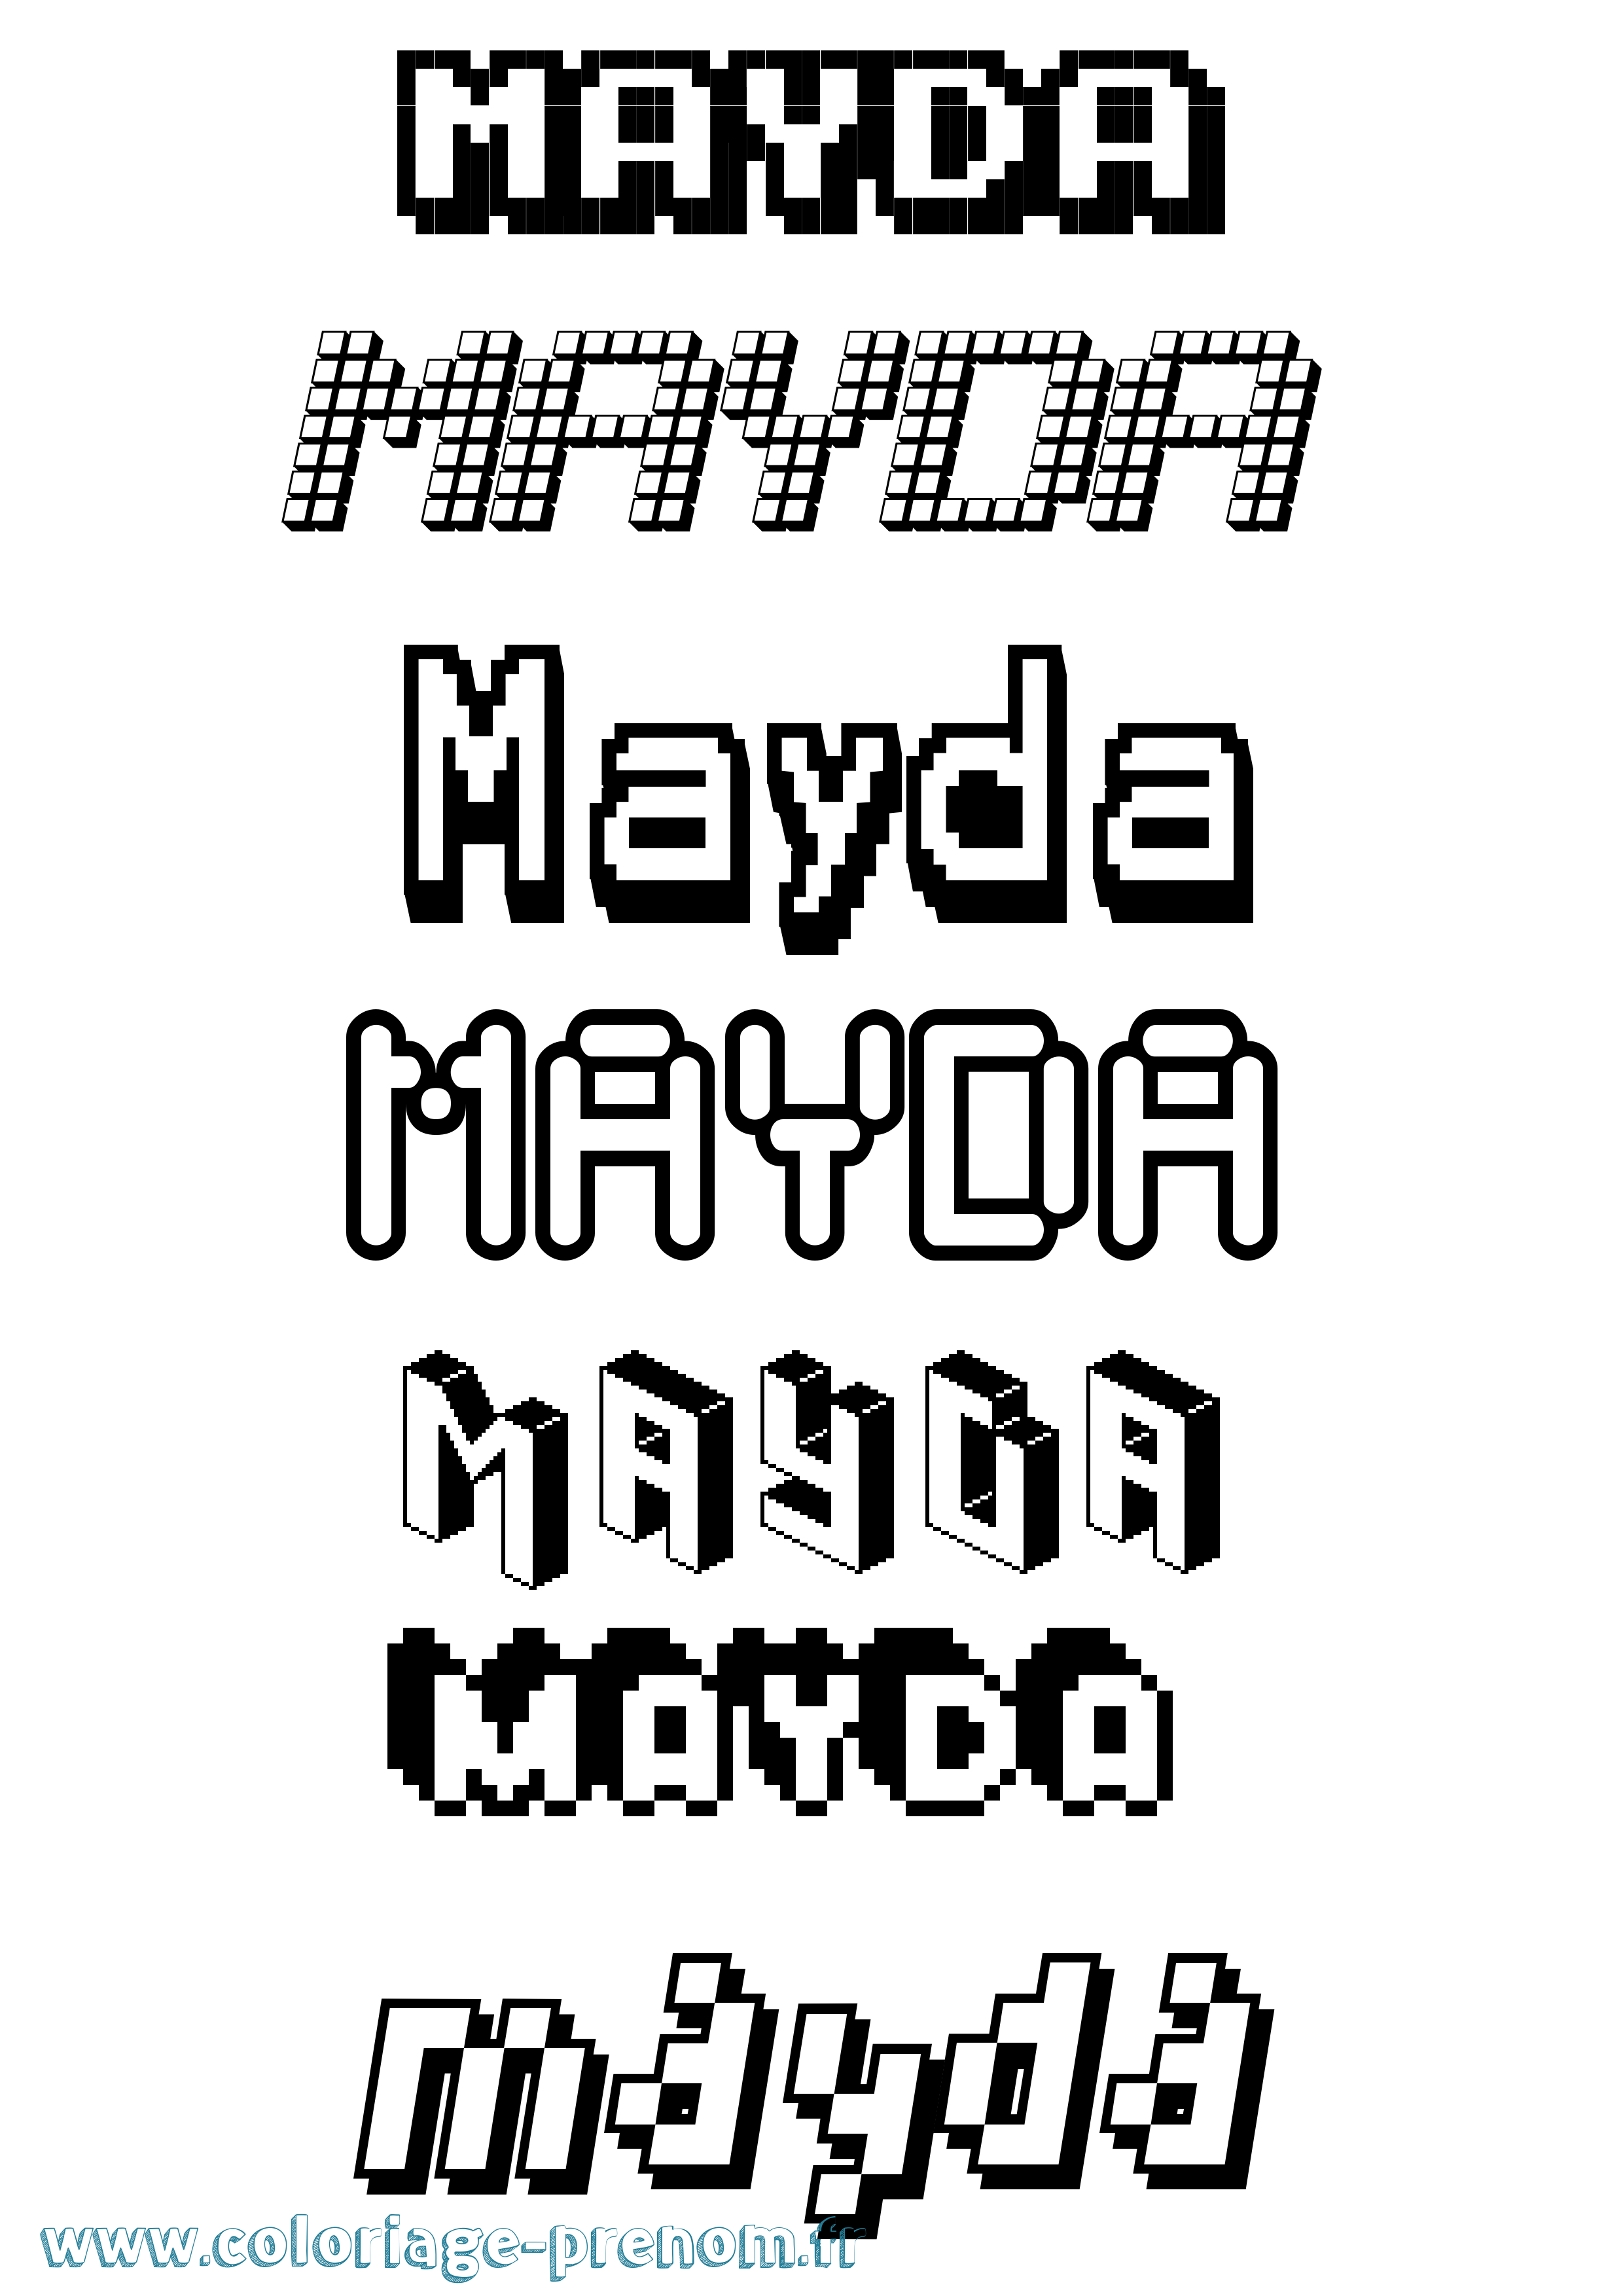 Coloriage prénom Mayda Pixel